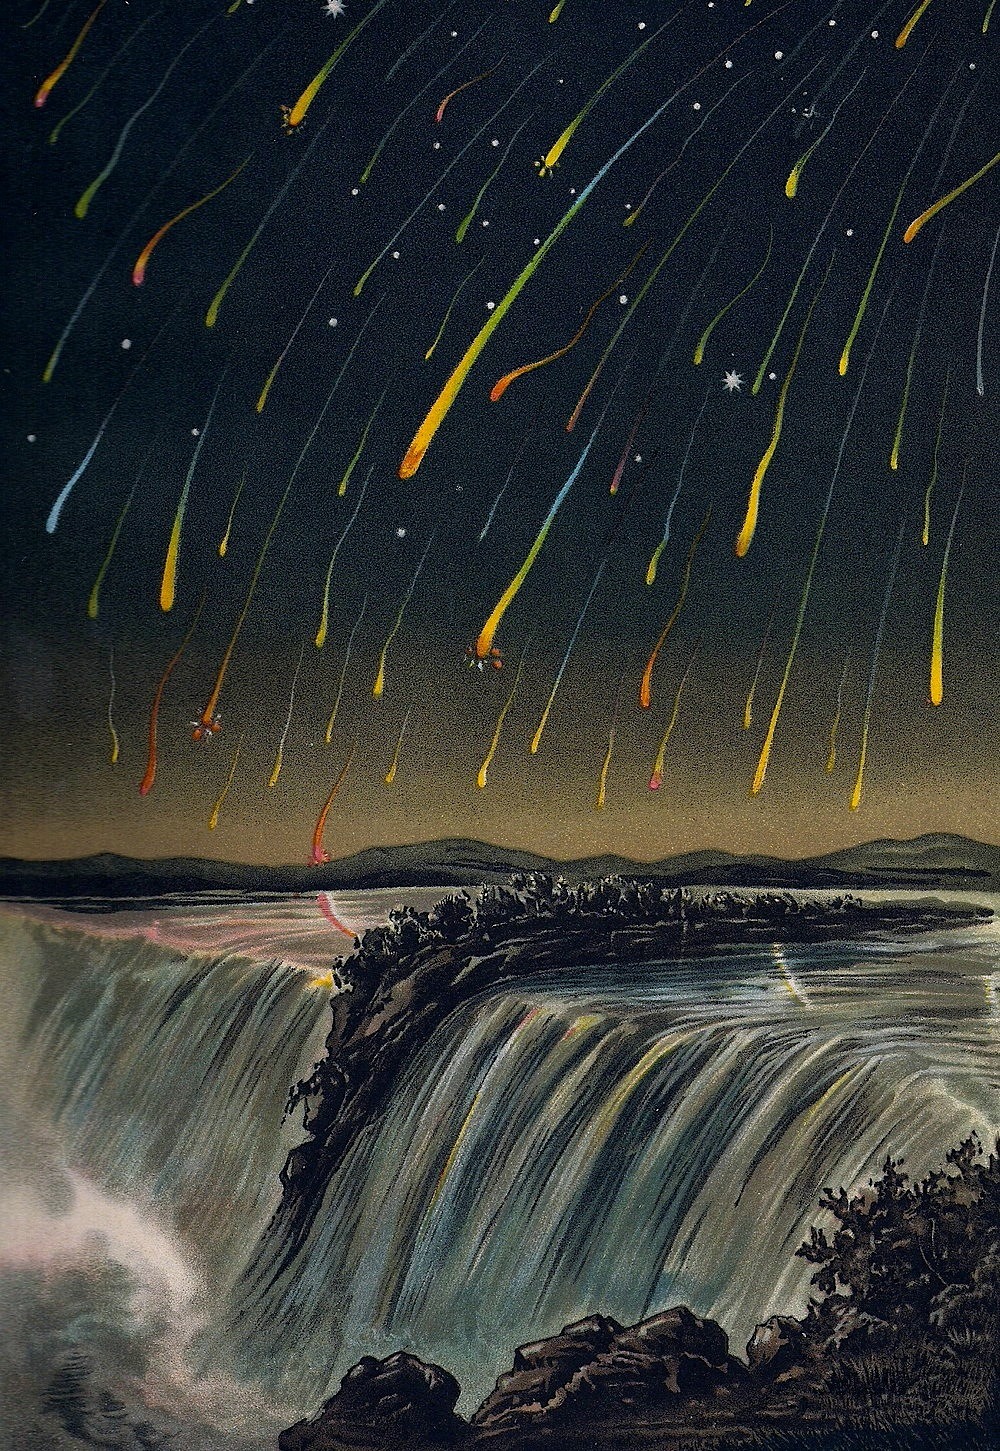 magictransistor:
“The Meteor Shower of 1833, Bilderatlas der Sternenwelt, Germany, 1888.
”